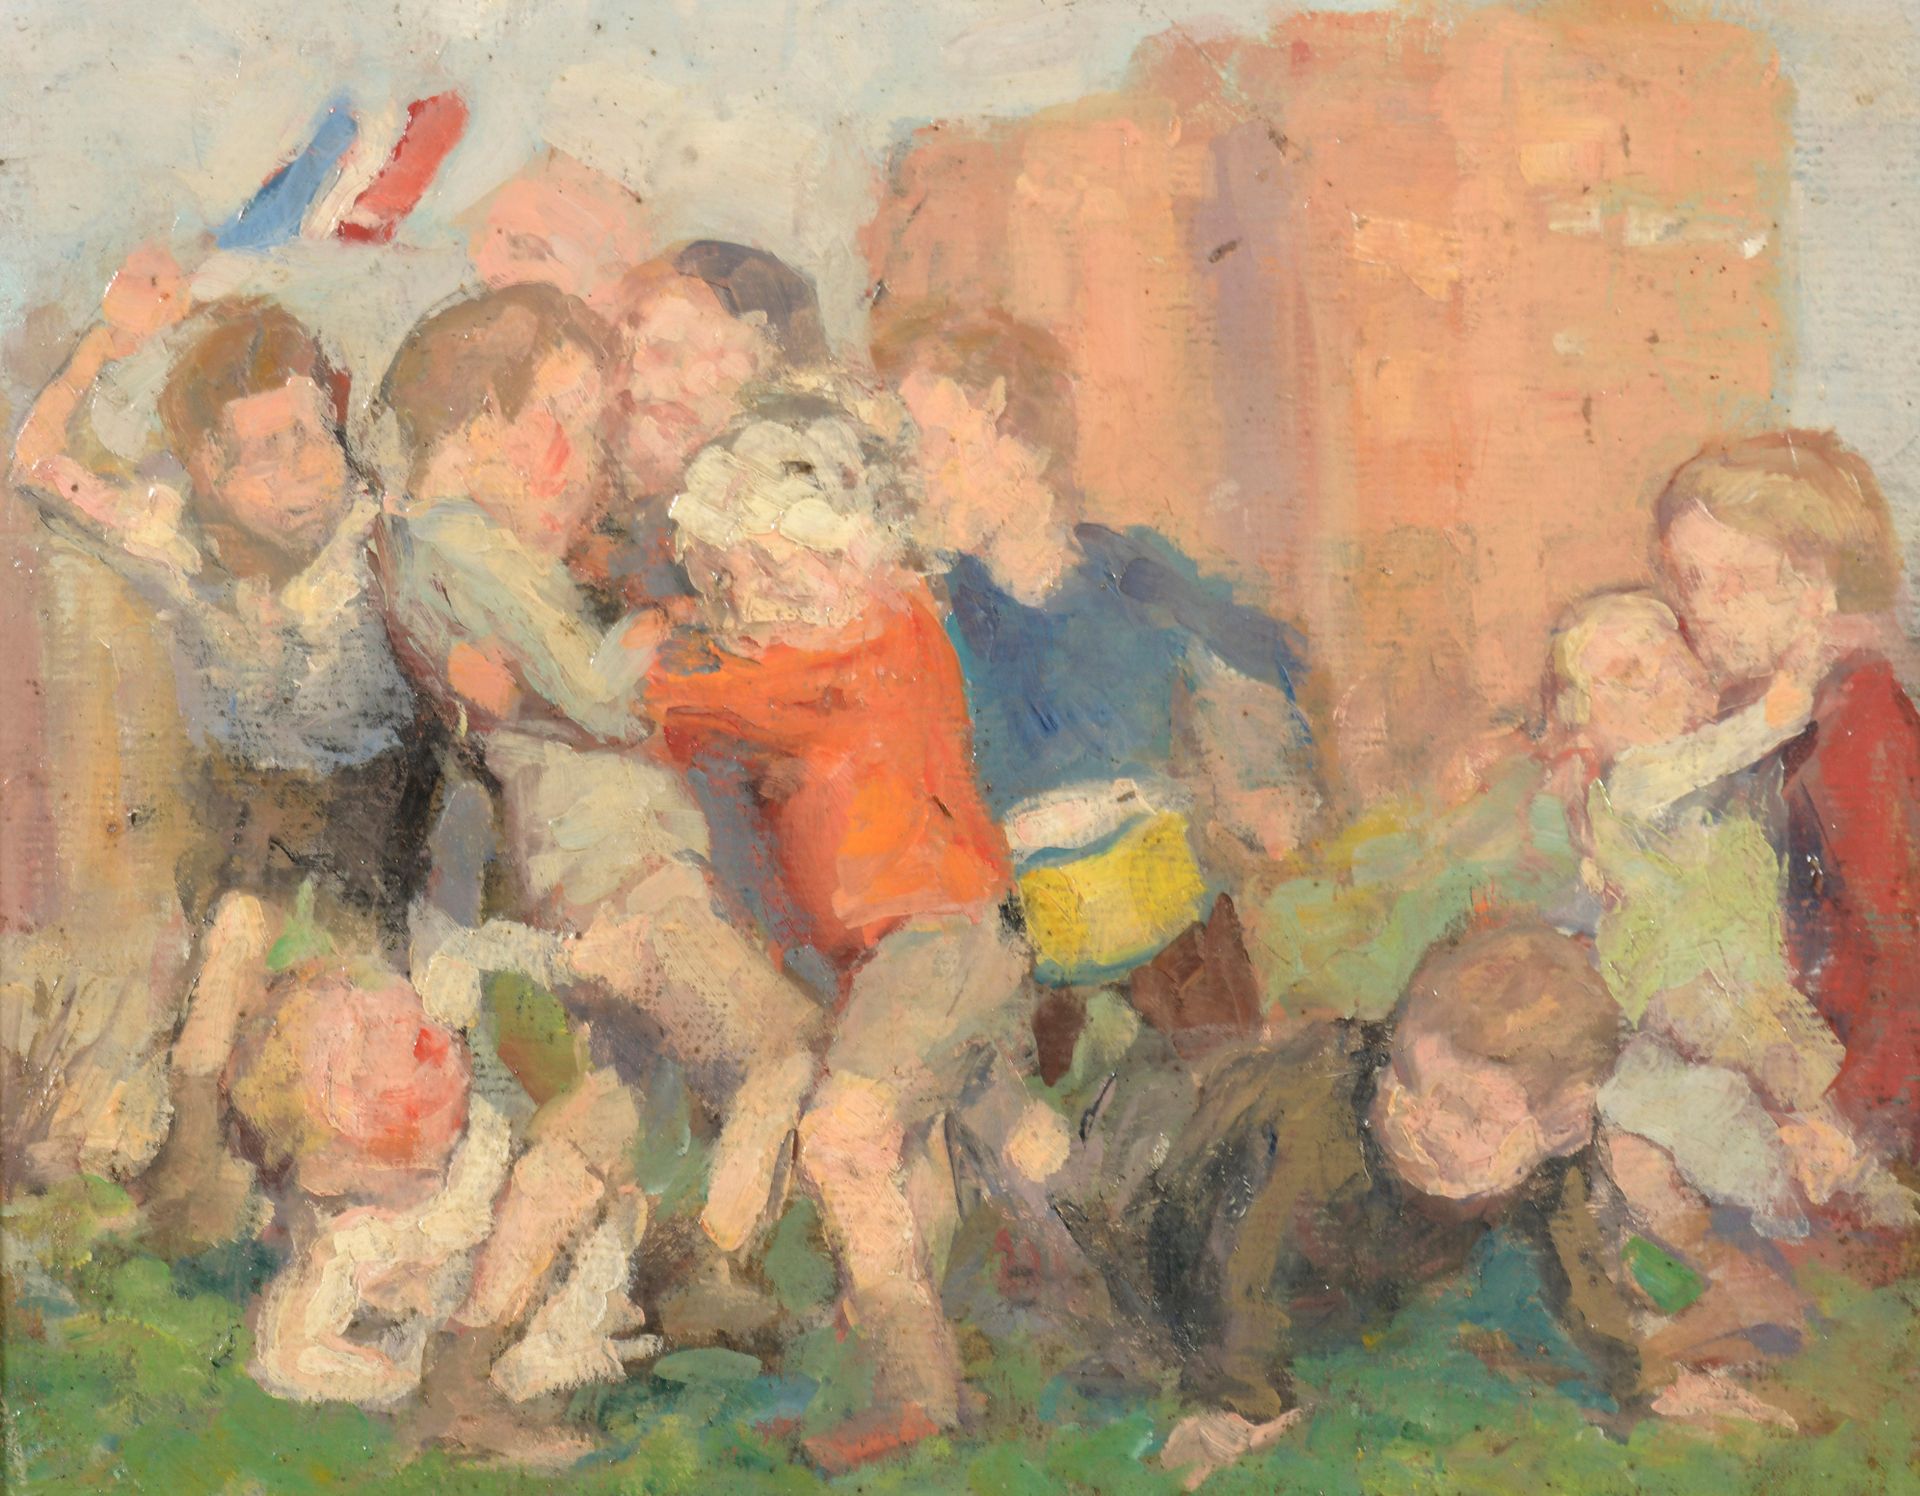 Null 十世纪的学校

斗争

布面油画。

21 x 26 cm